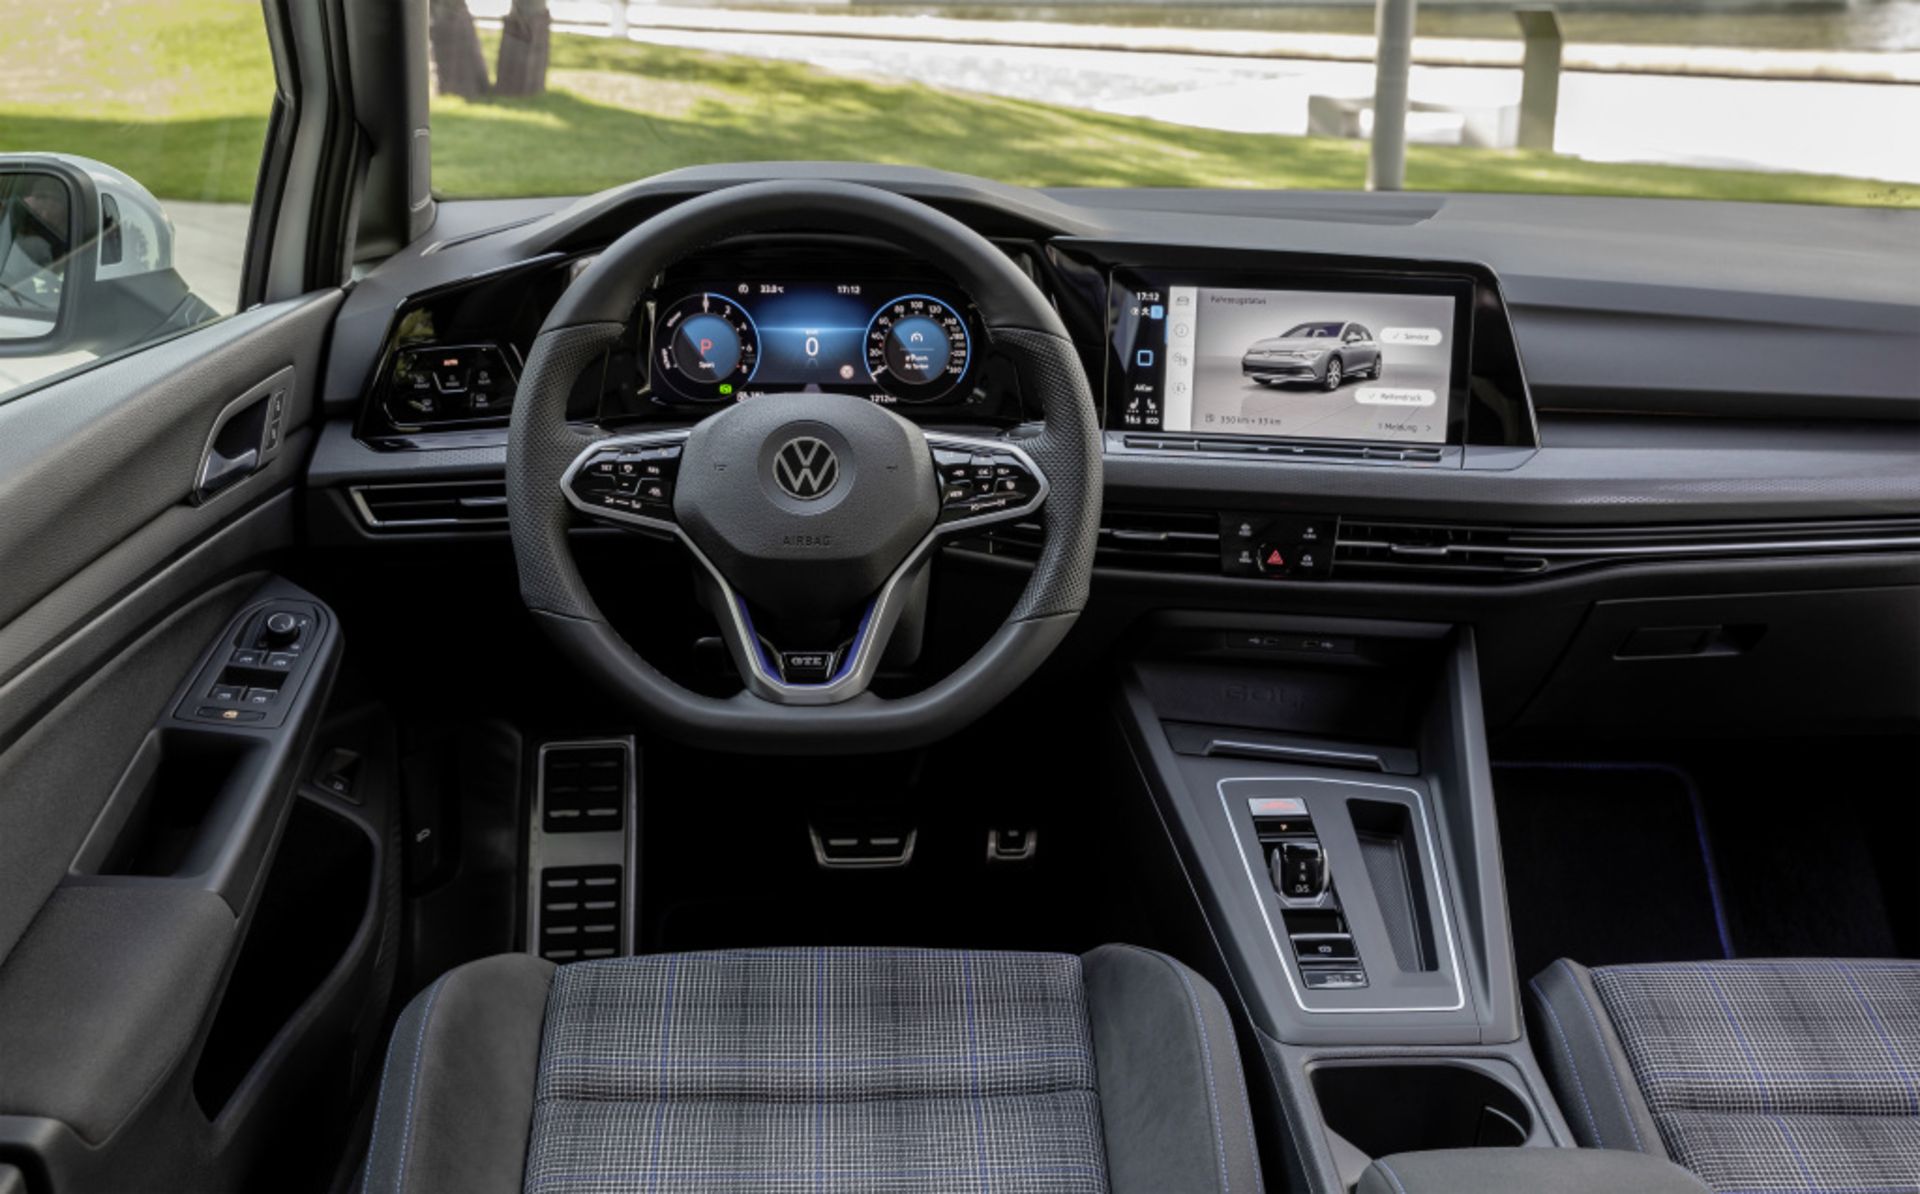 مرجع متخصصين ايران  Volkswagen Golf GTE فولكس واگن گلف پلاگين هيبريد 2021